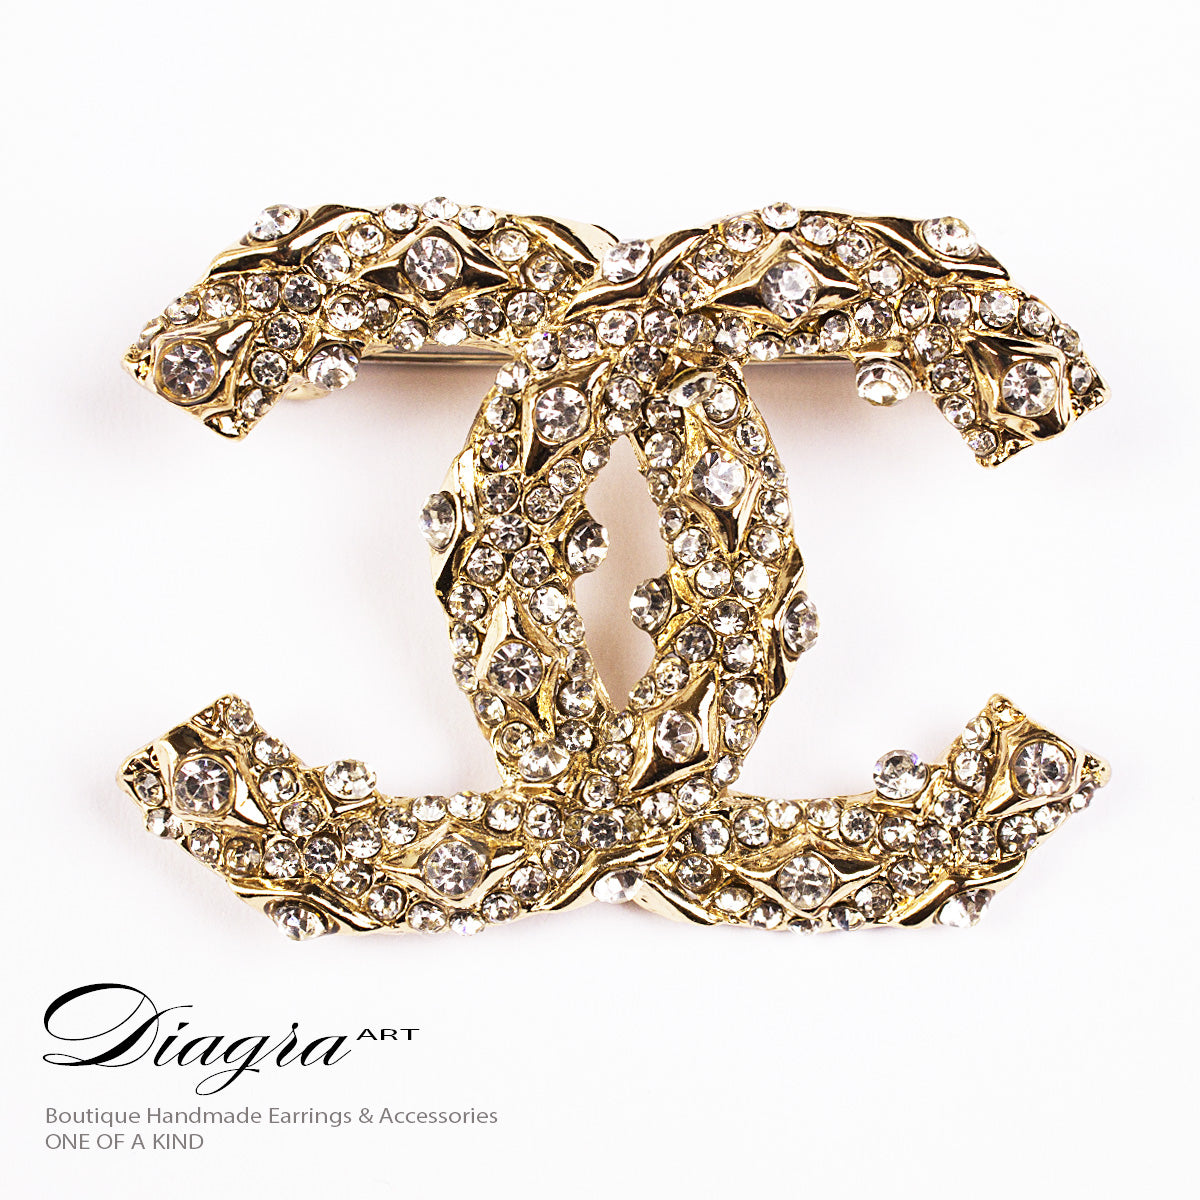 Chanel brooch gold crystal handmade designer inspired 61913 – Diagra